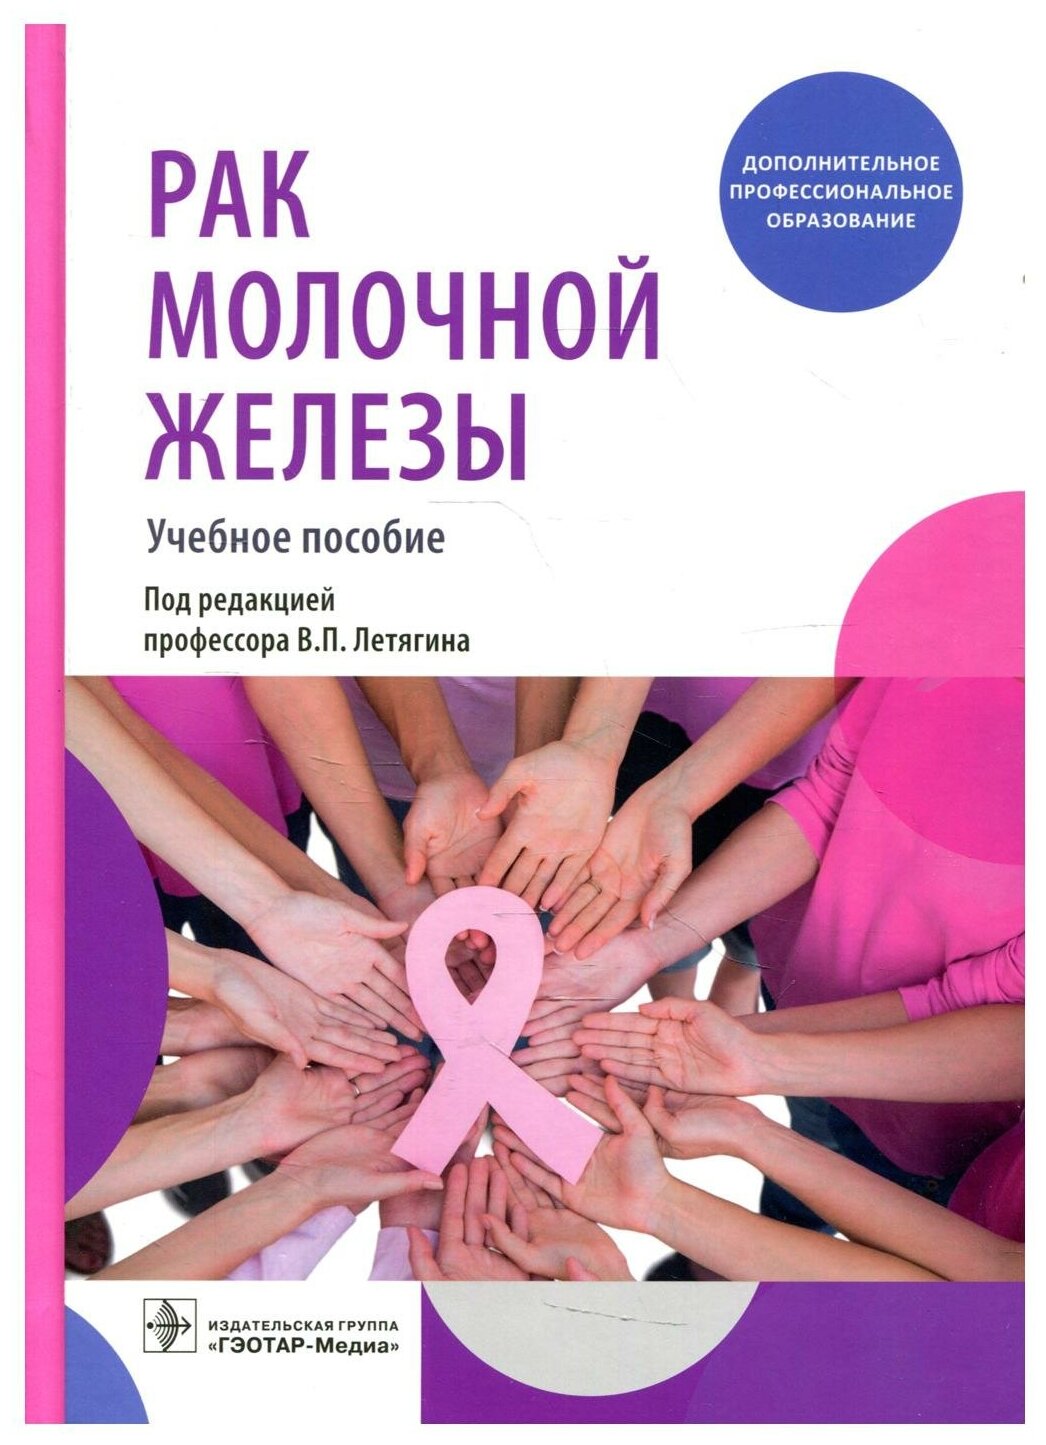 Рак молочной железы учебное пособие - фото №1